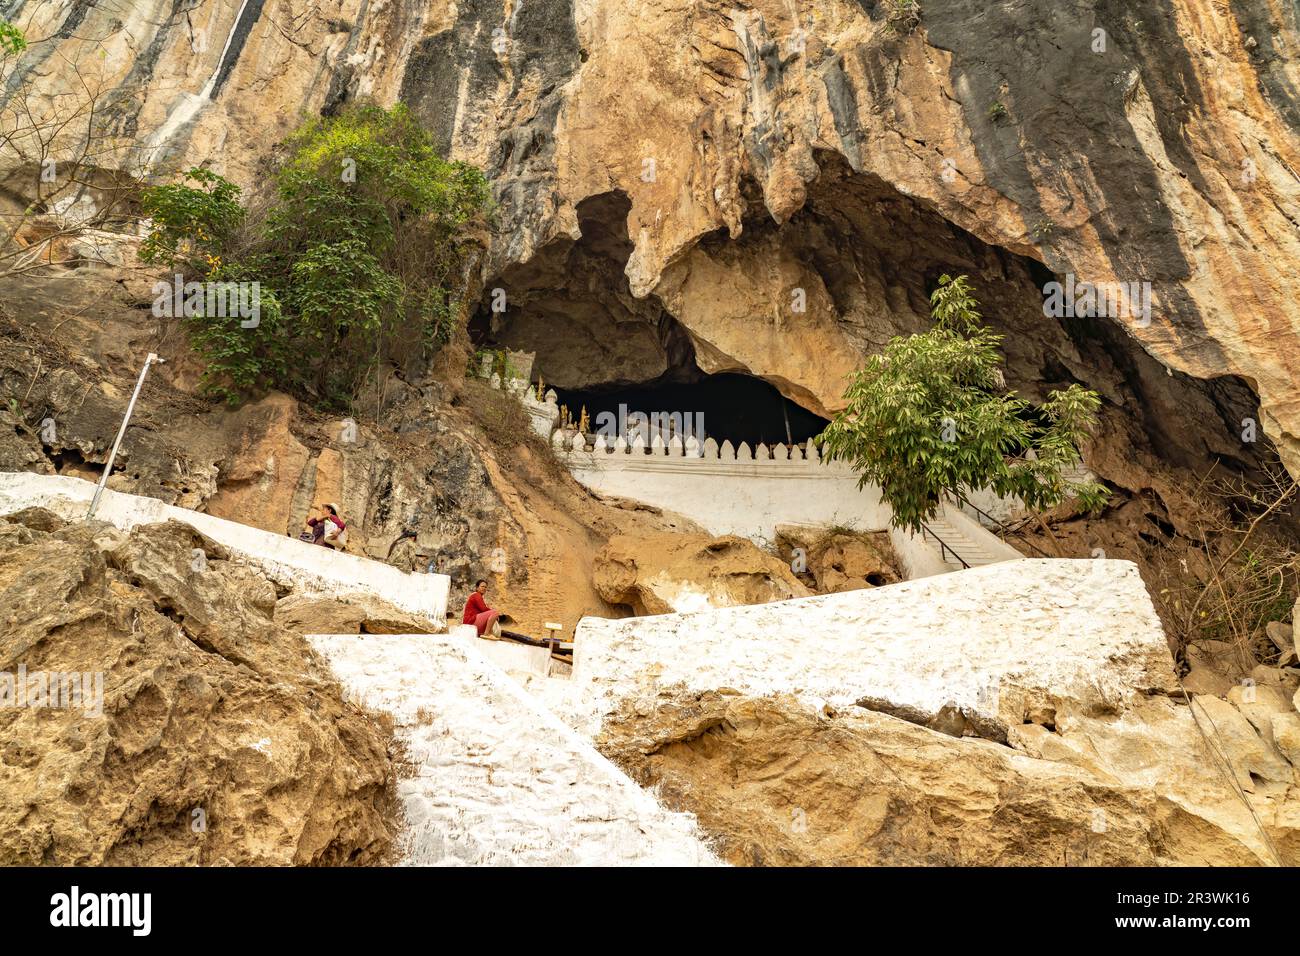 Eingang zu den Pak ou Höhlen BEI Luang Prabang, Laos, Asie | entrée aux grottes de Pak ou près de Luang Prabang, Laos, Asie Banque D'Images